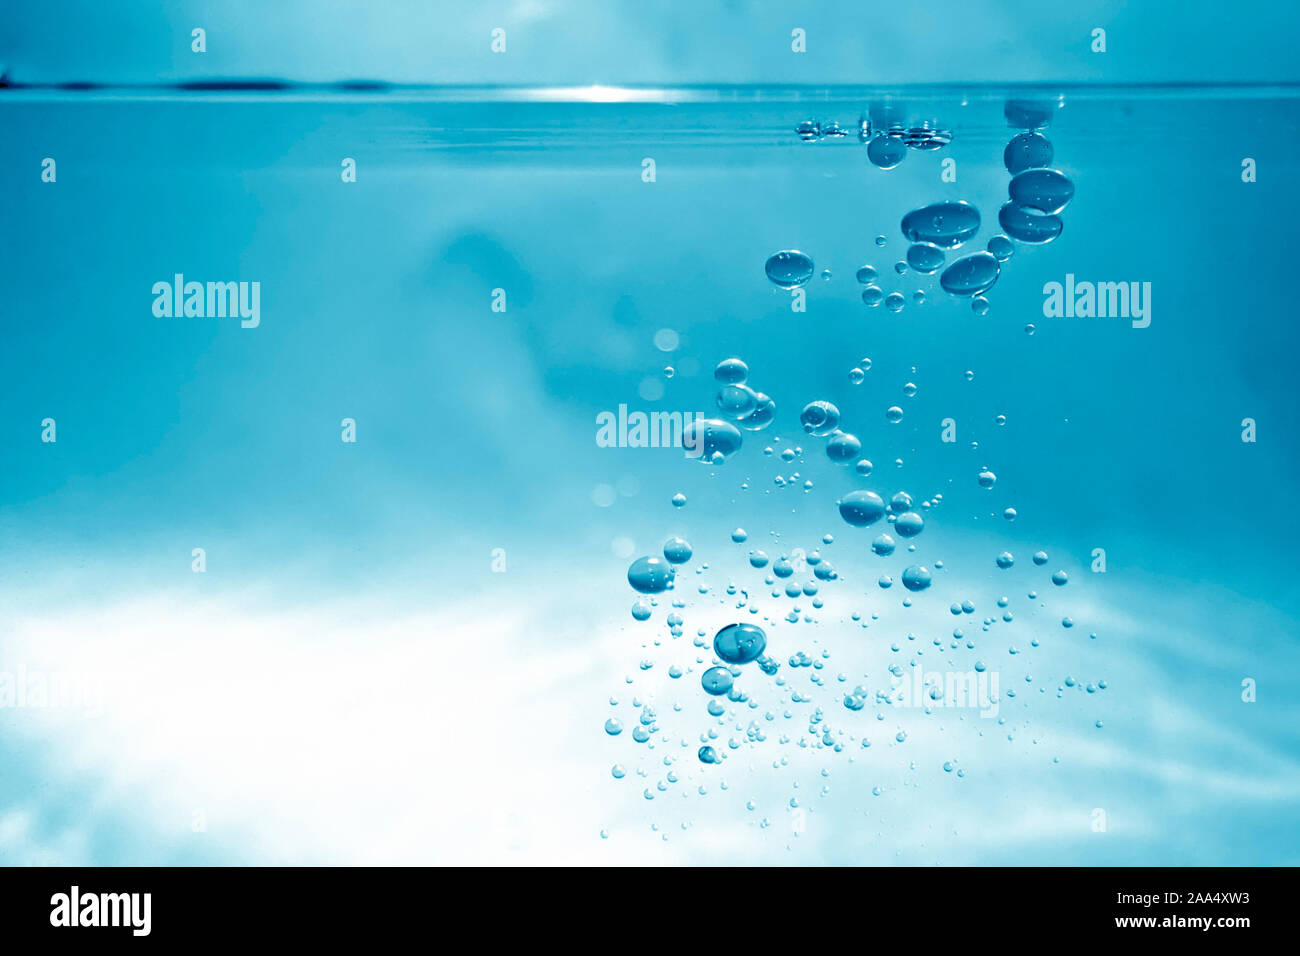 Ein schoener Hintergrund, bestehend aus Wasserblasen unter Wasser Stock Photo